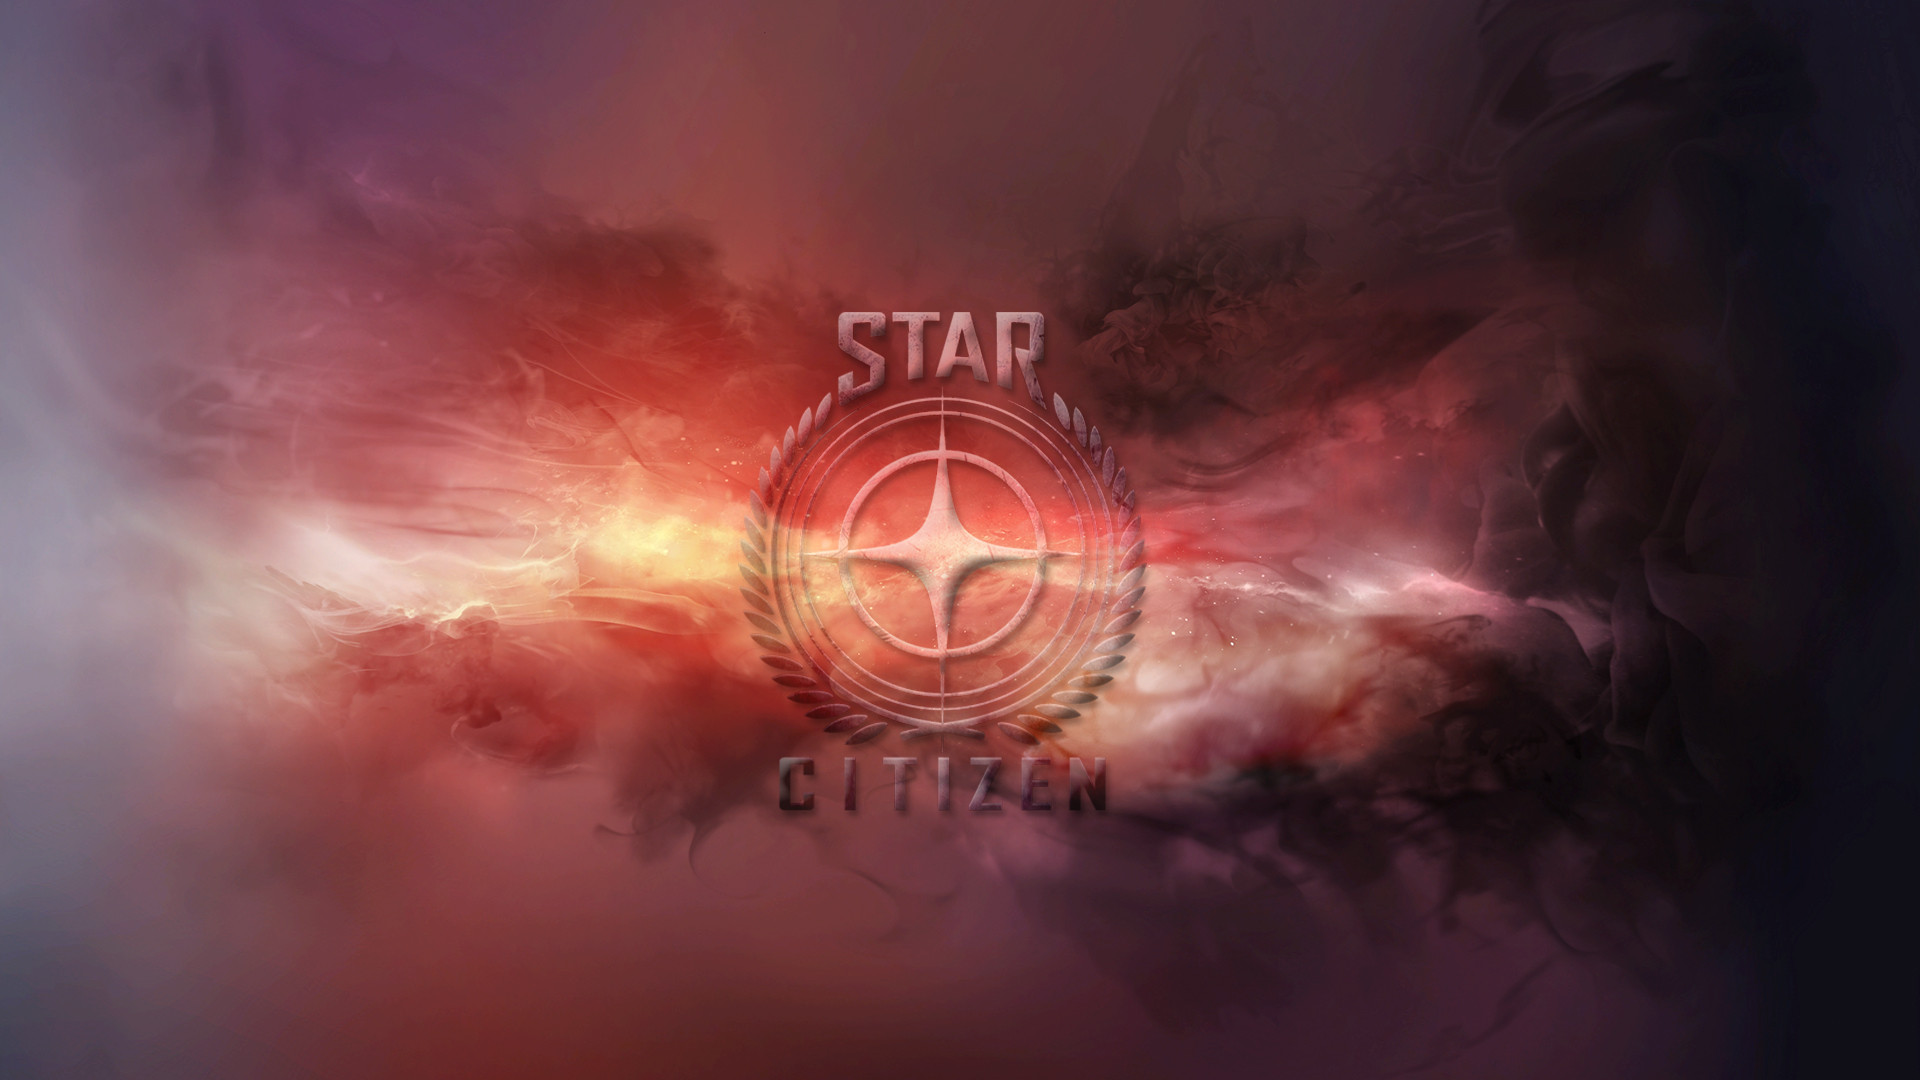 Glorious 1080p Star Citizen Wallpaper Using Hidden Image That